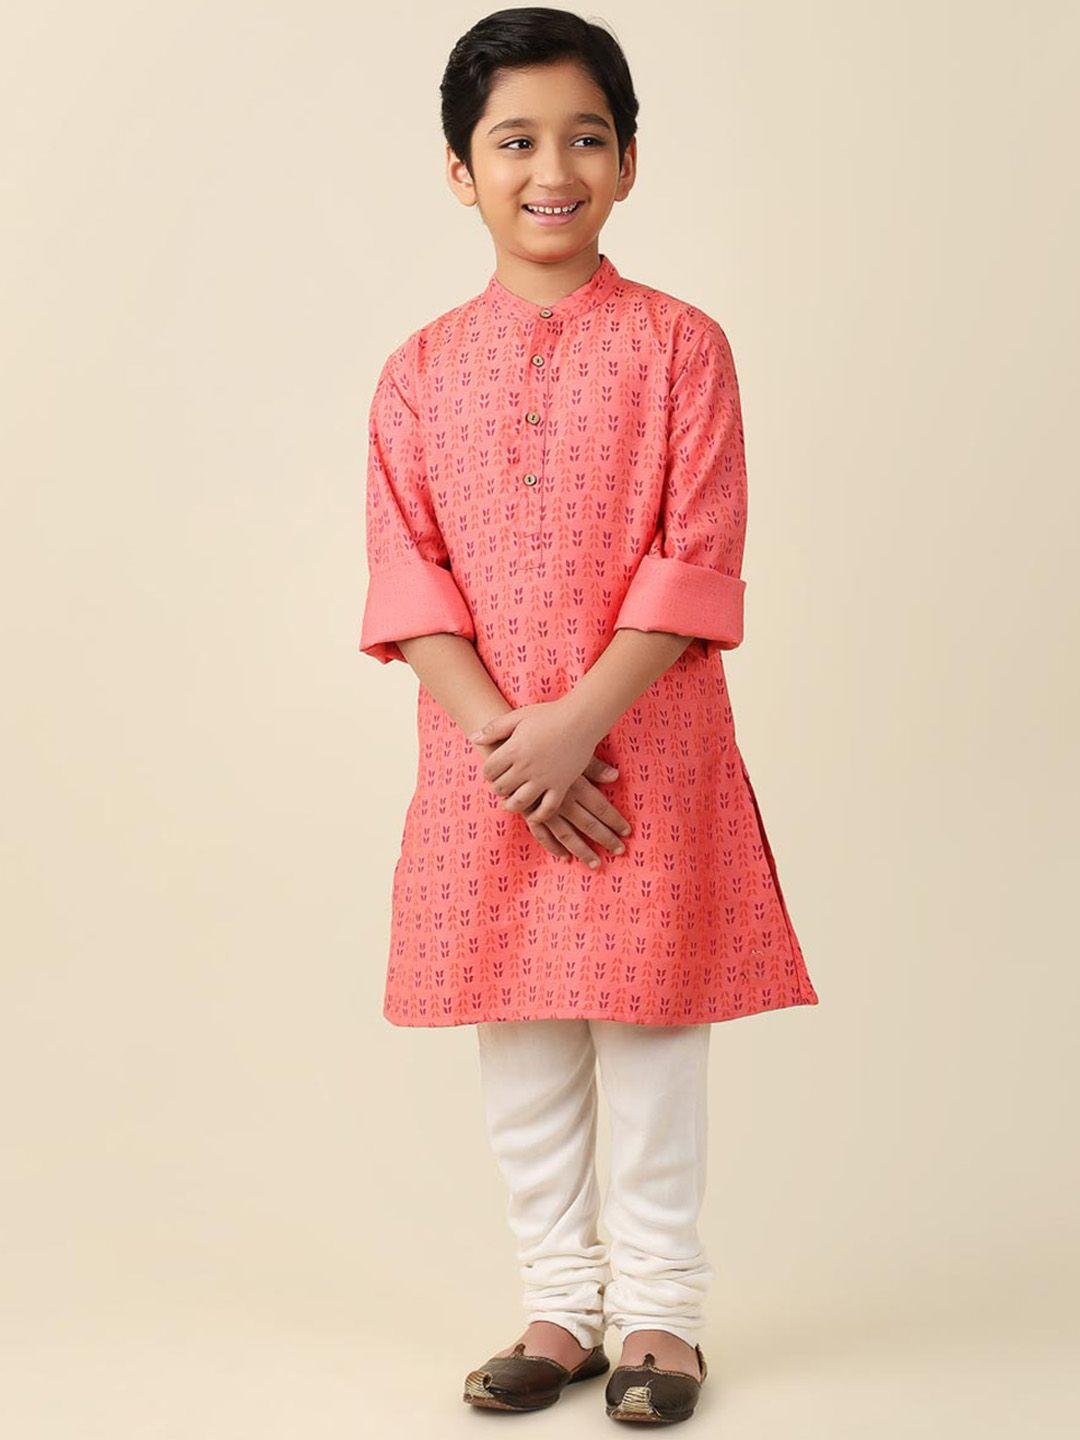 fabindia-boys-ethnic-motifs-printed-mandarin-collar-cotton-regular-kurta